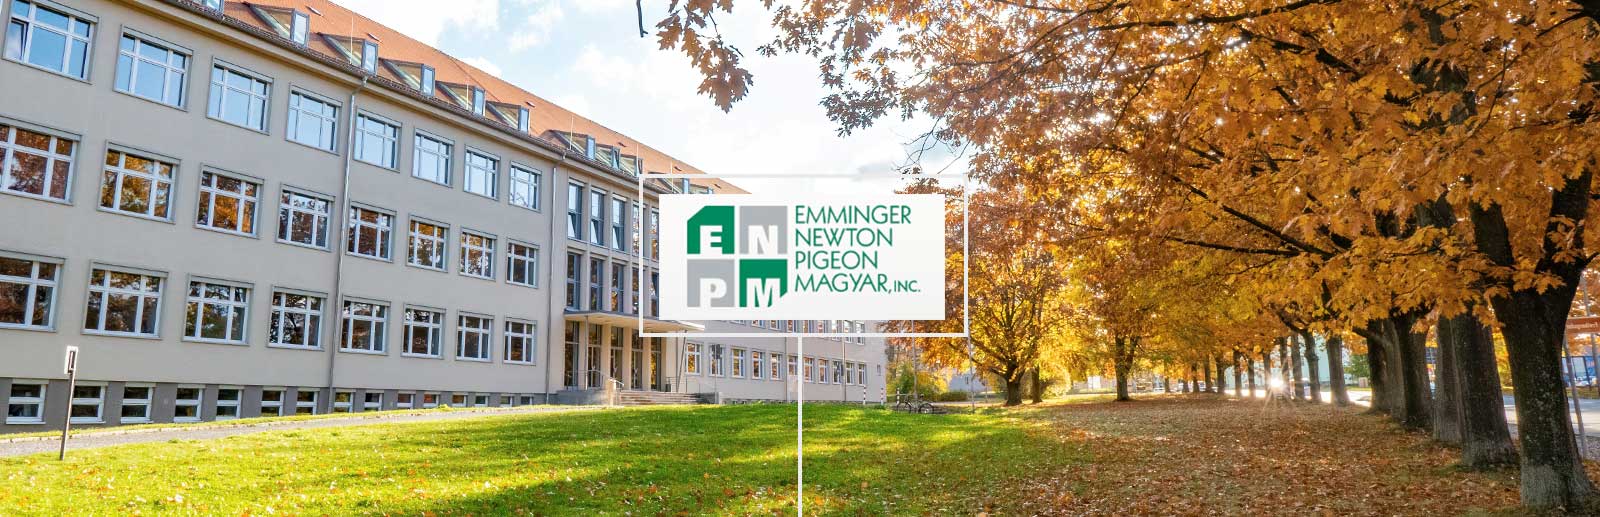 Emminger Newton Pigeon & Magyar - Real Estate Appraising